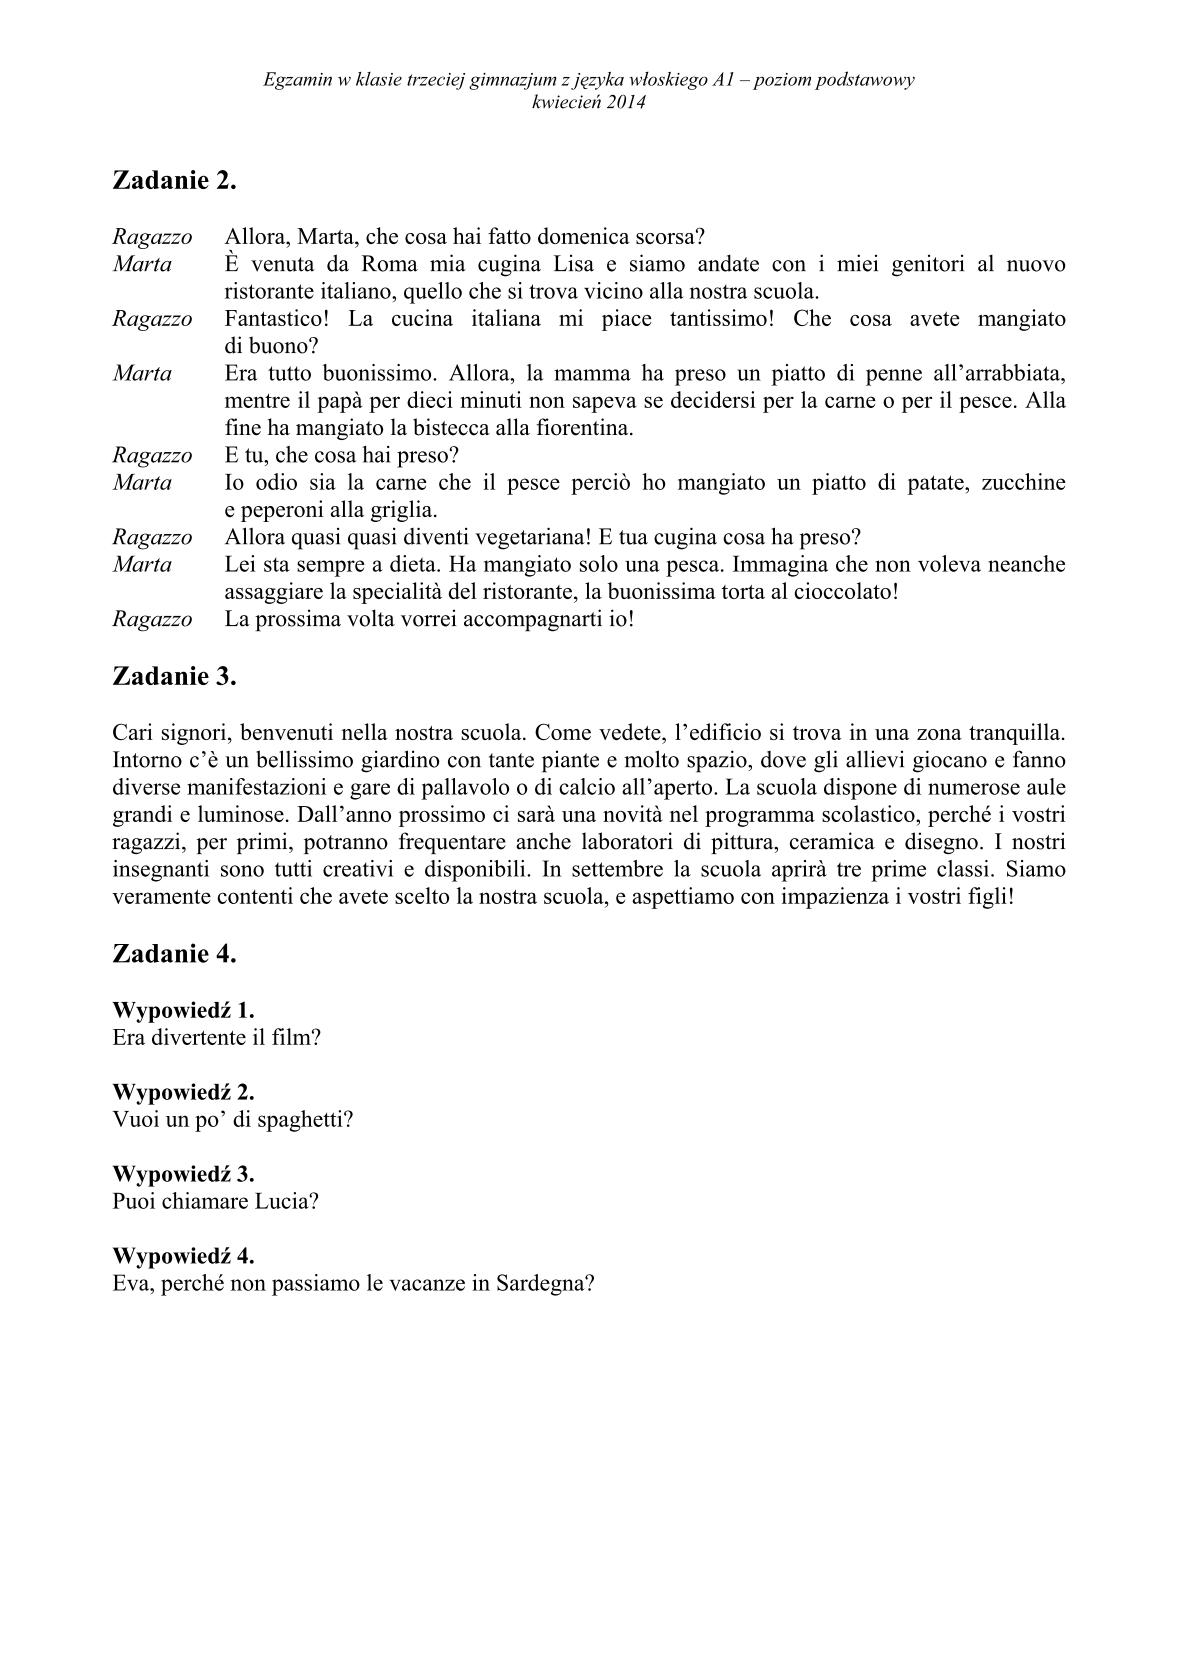 transkrypcja-wloski-poziom-podstawowy-egzamin-gimnazjalny-25.04.2014-14